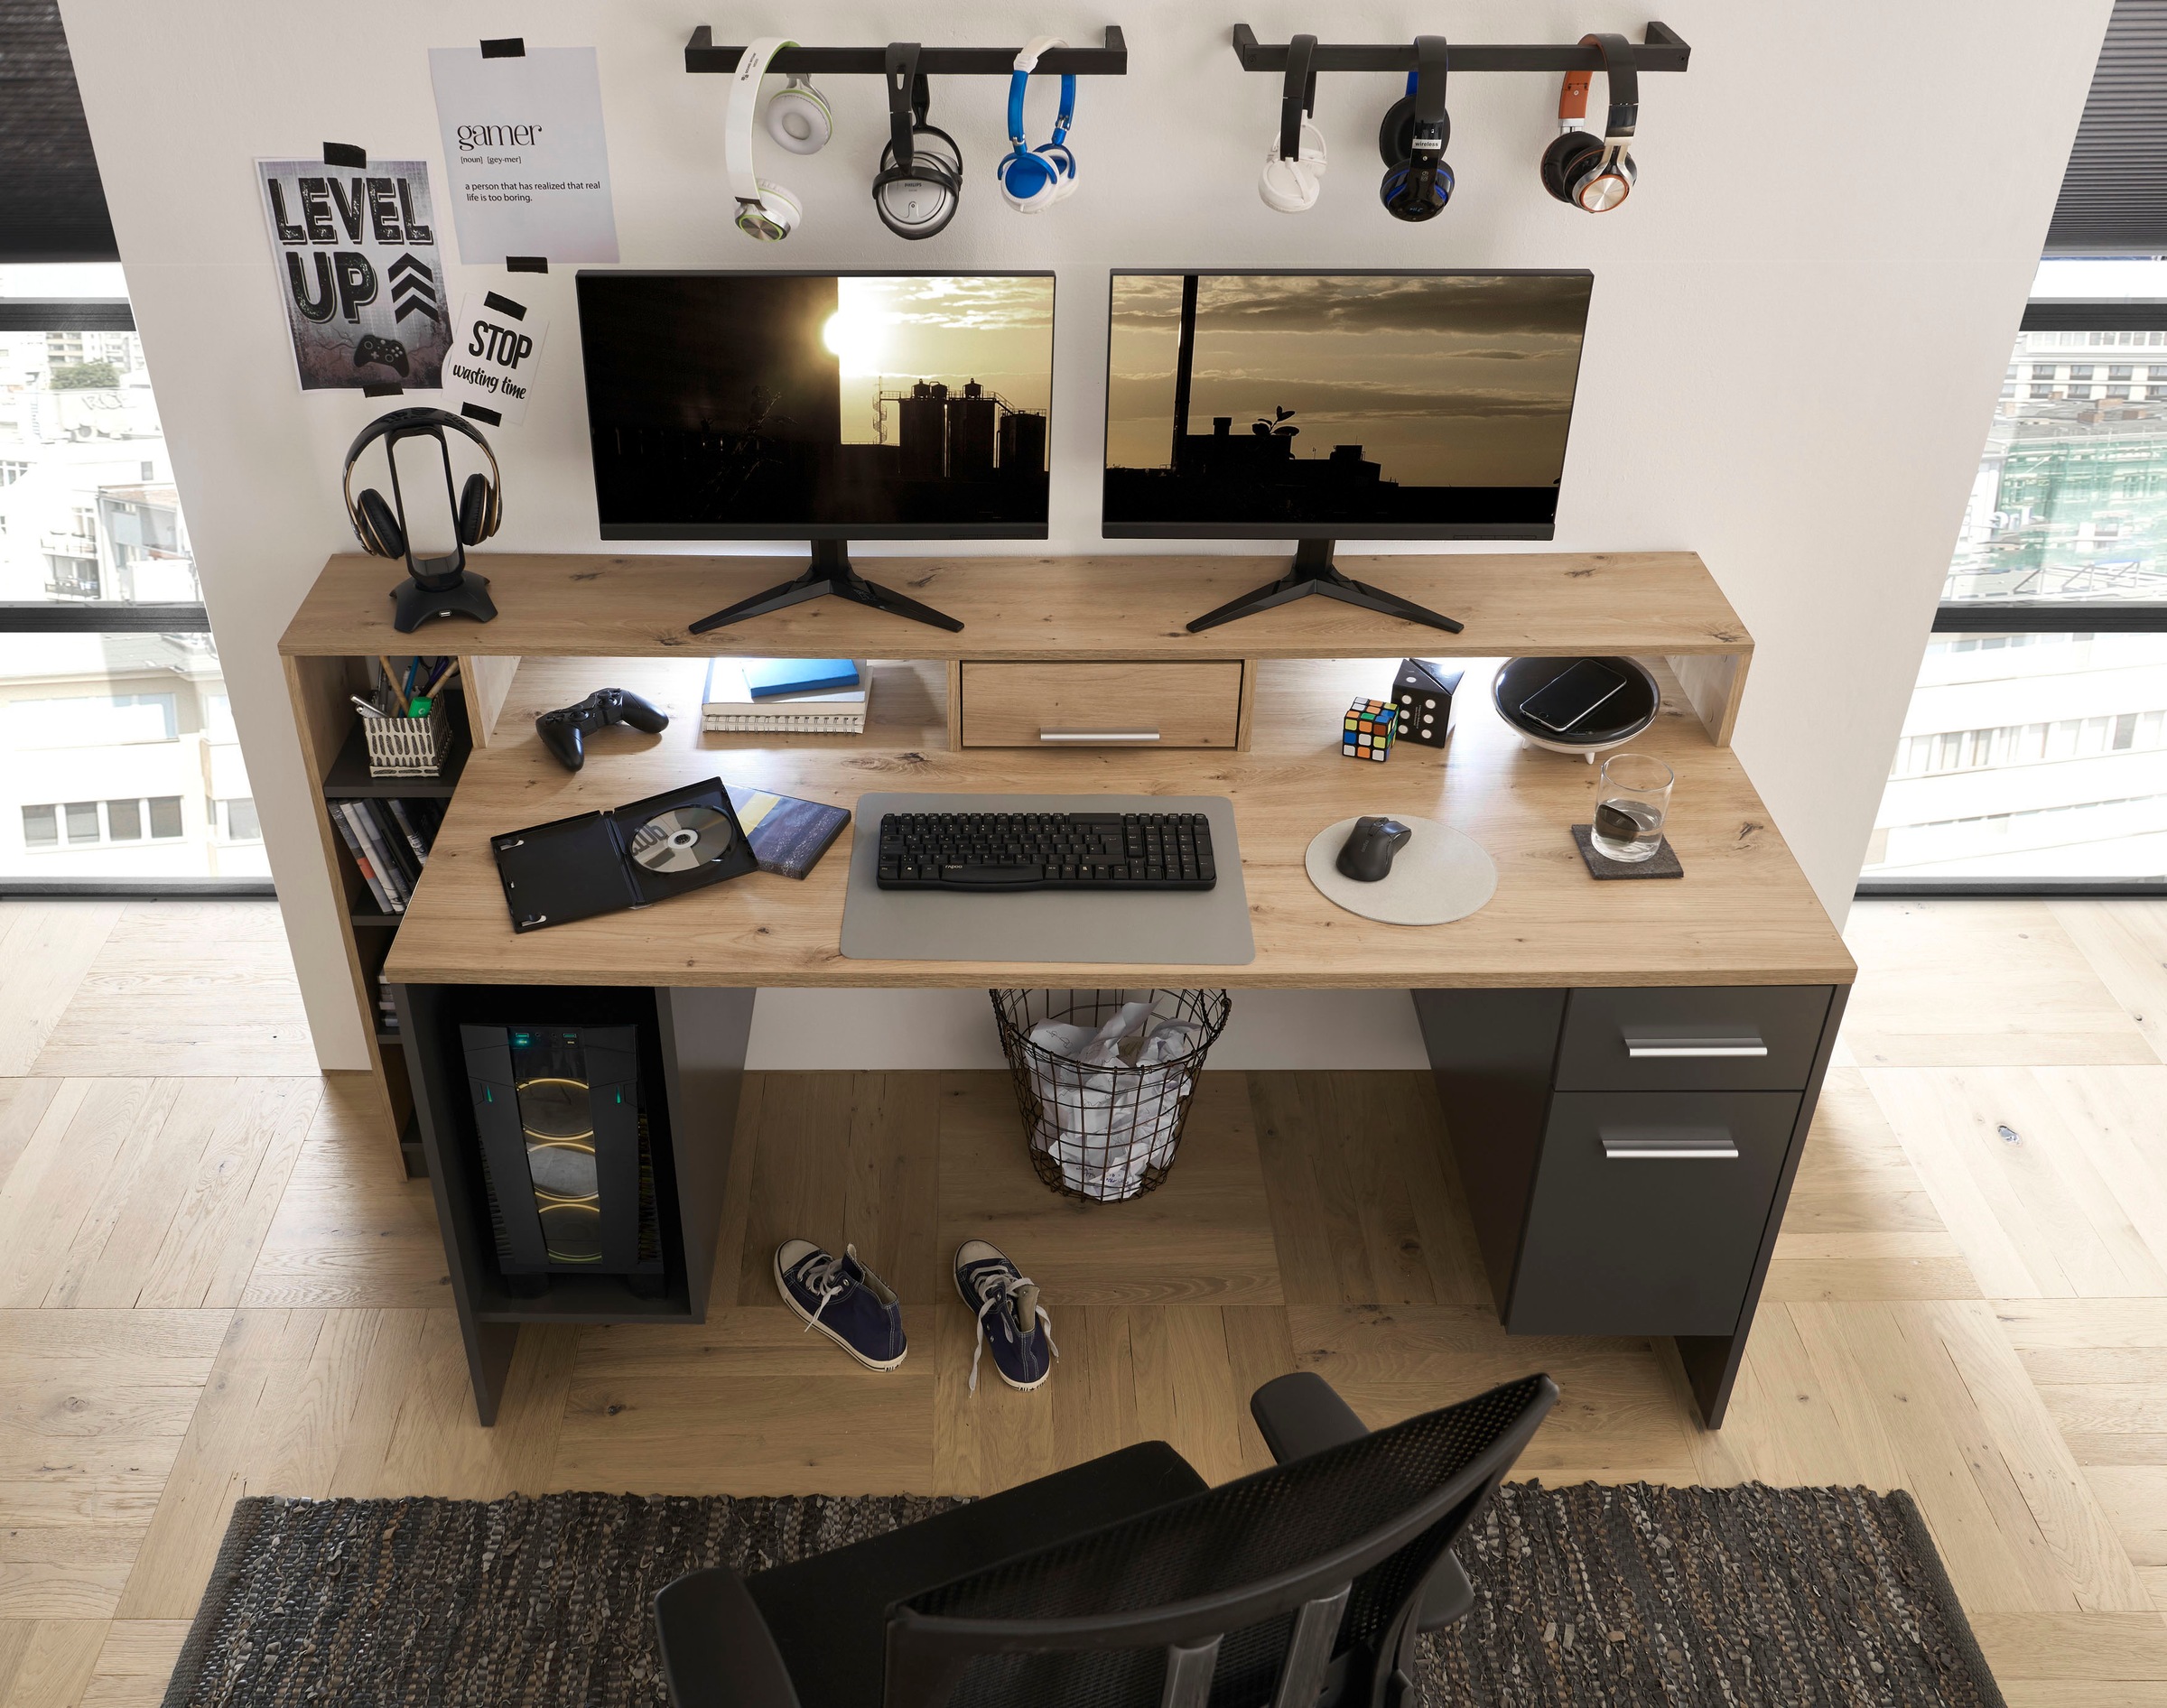 BEGA OFFICE Gamingtisch »Highscore 4«, Grau inkl. LED Beleuchtung, Computertisch mit Desktopfach